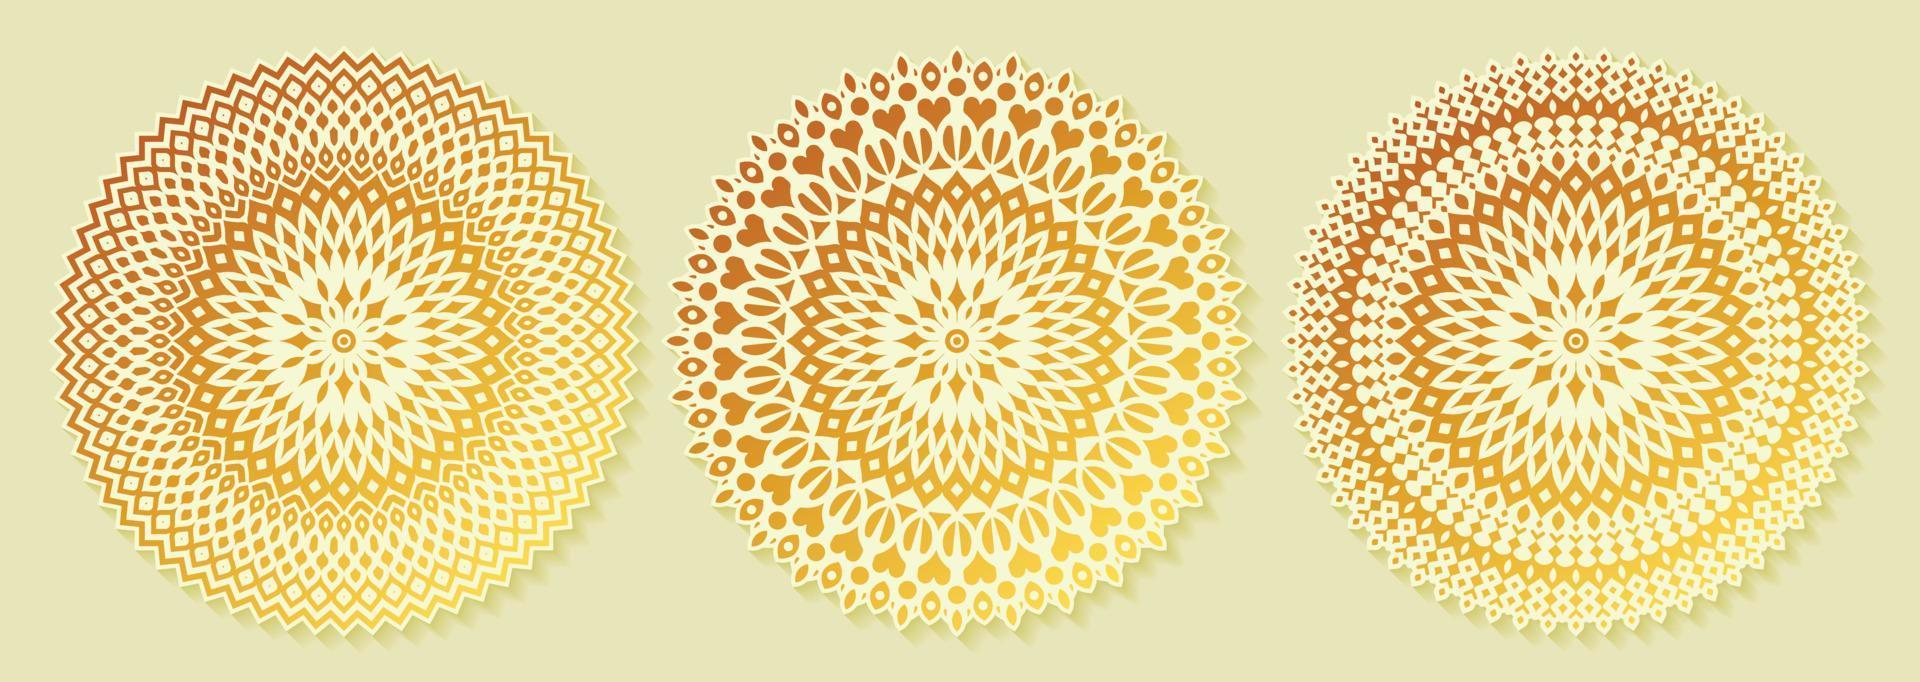 luxuriöse weiße Mandala-Design-Sammlungsvorlage vektor